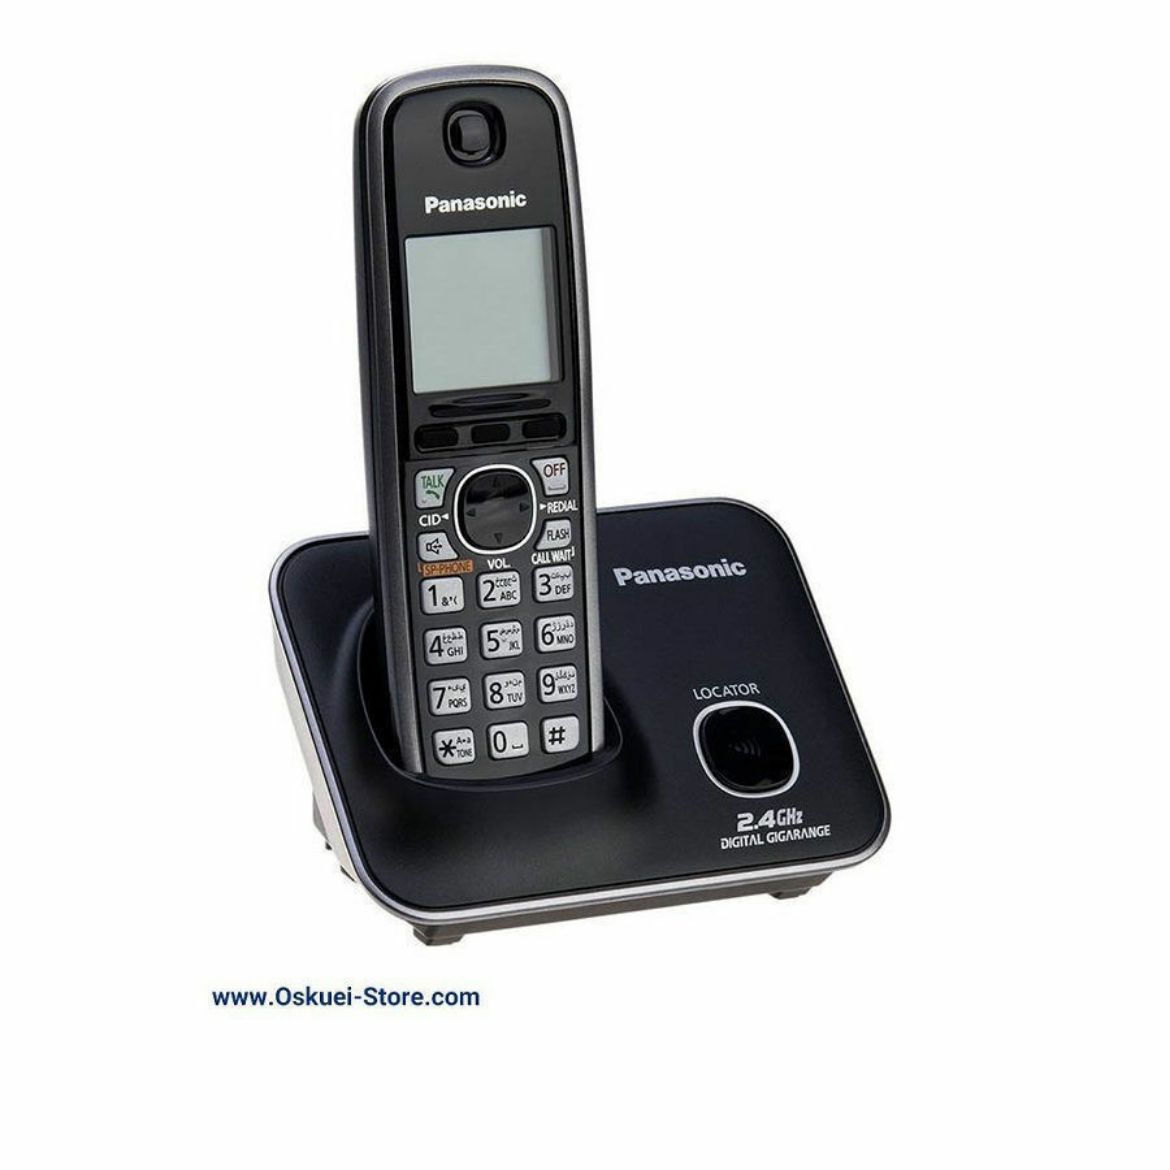 Panasonic KX-TG3711 Cordless Telephone Black Left